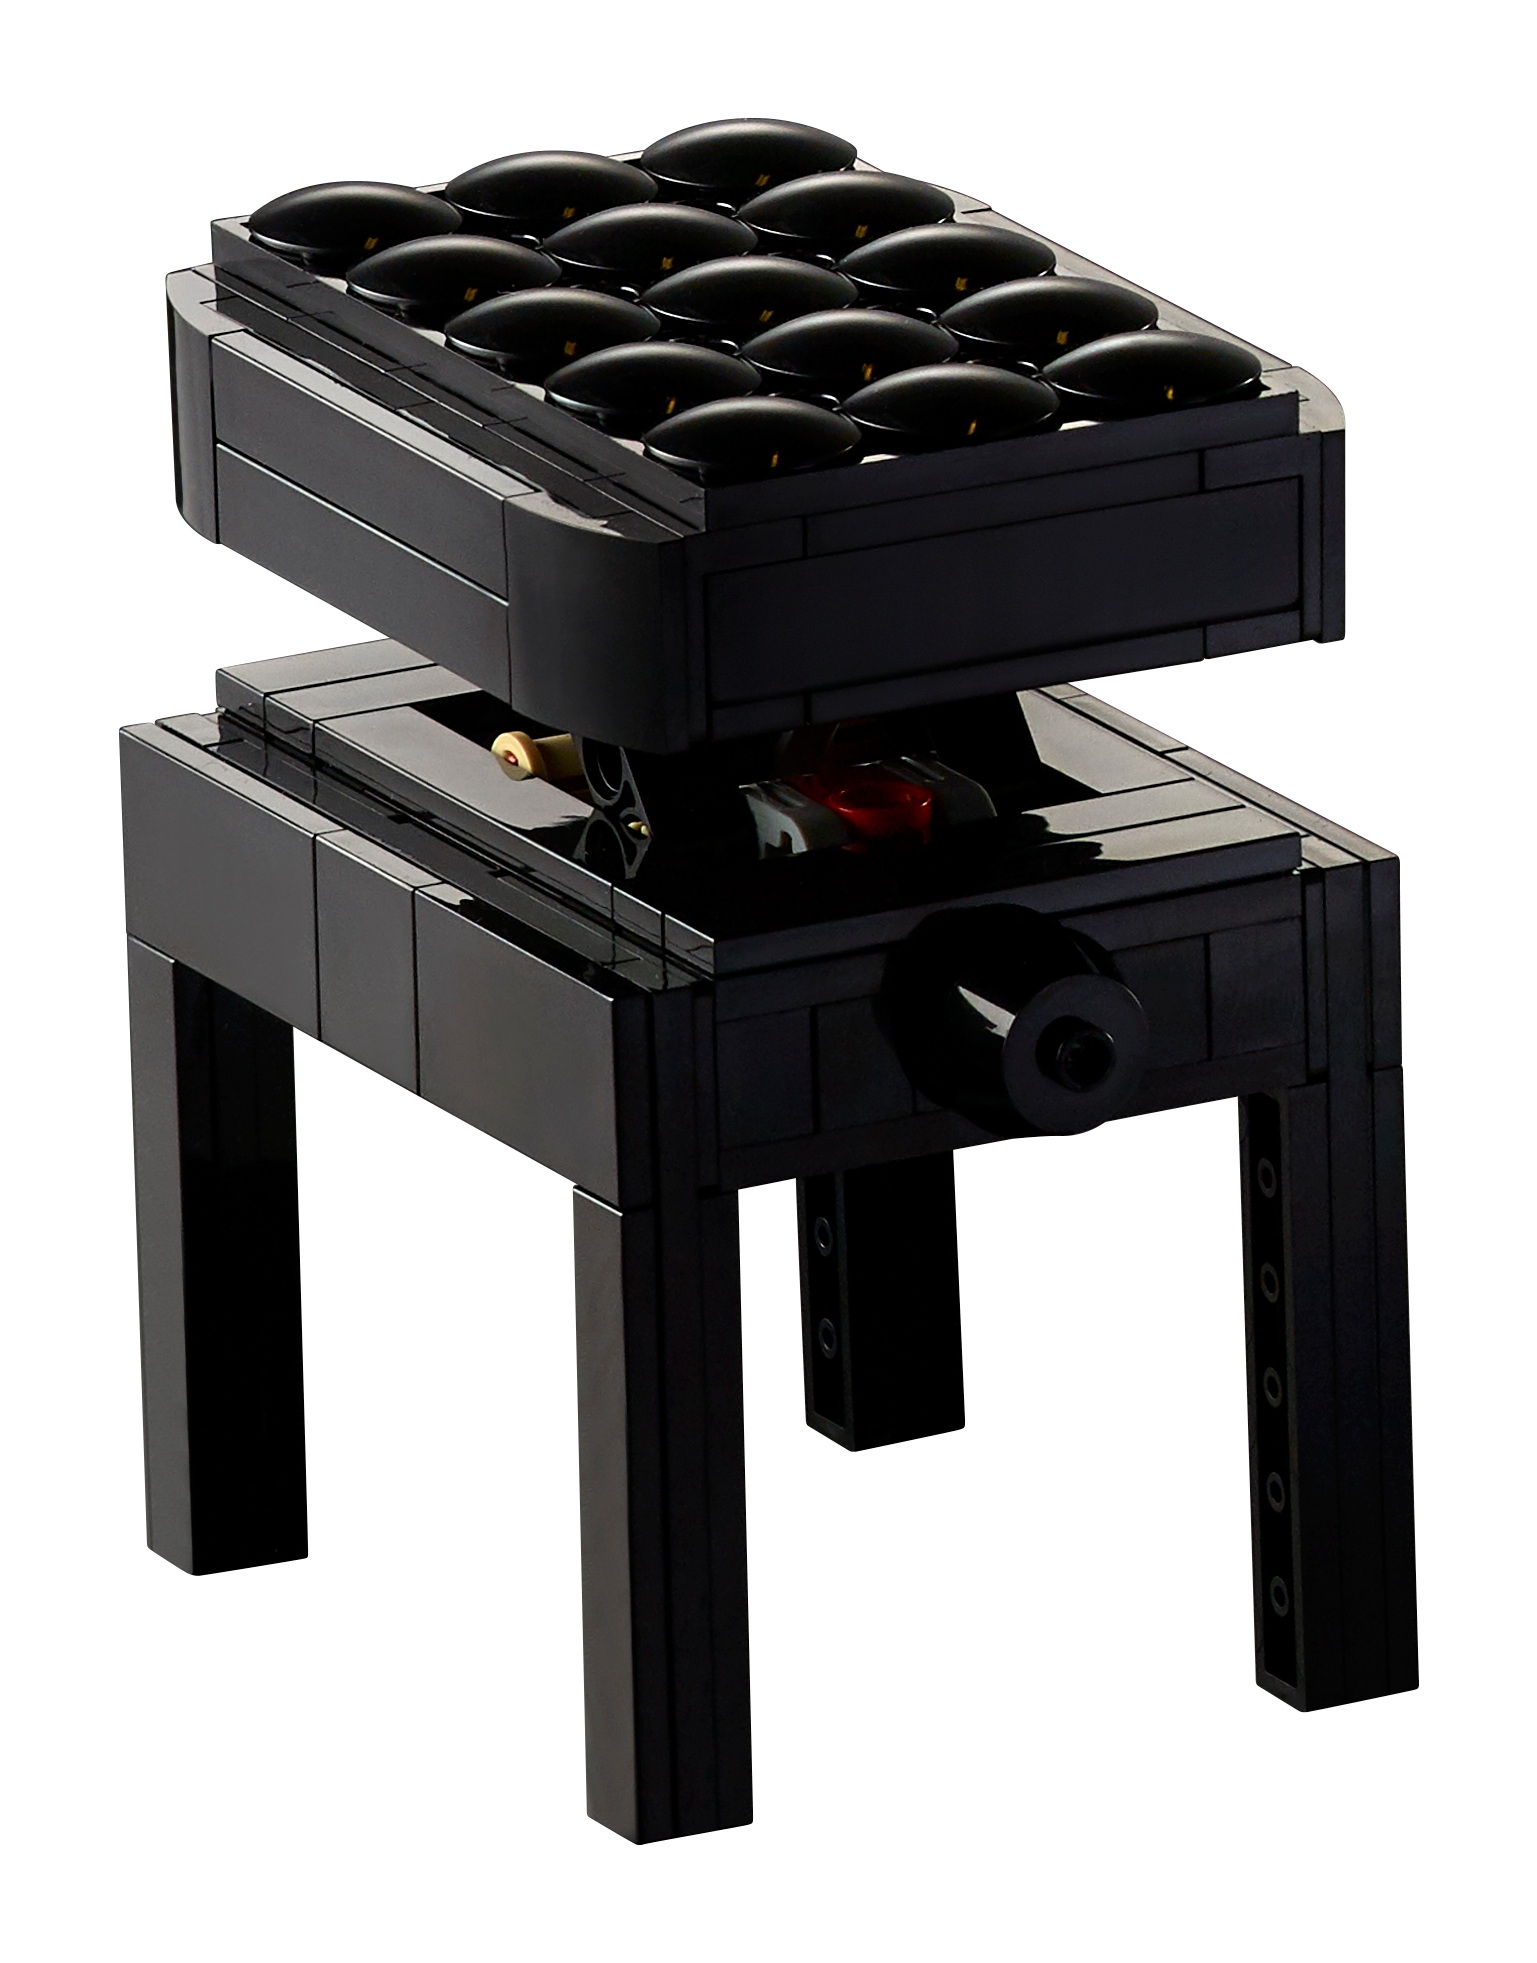 Ho costruito (e suonato) il PIANOFORTE di LEGO 